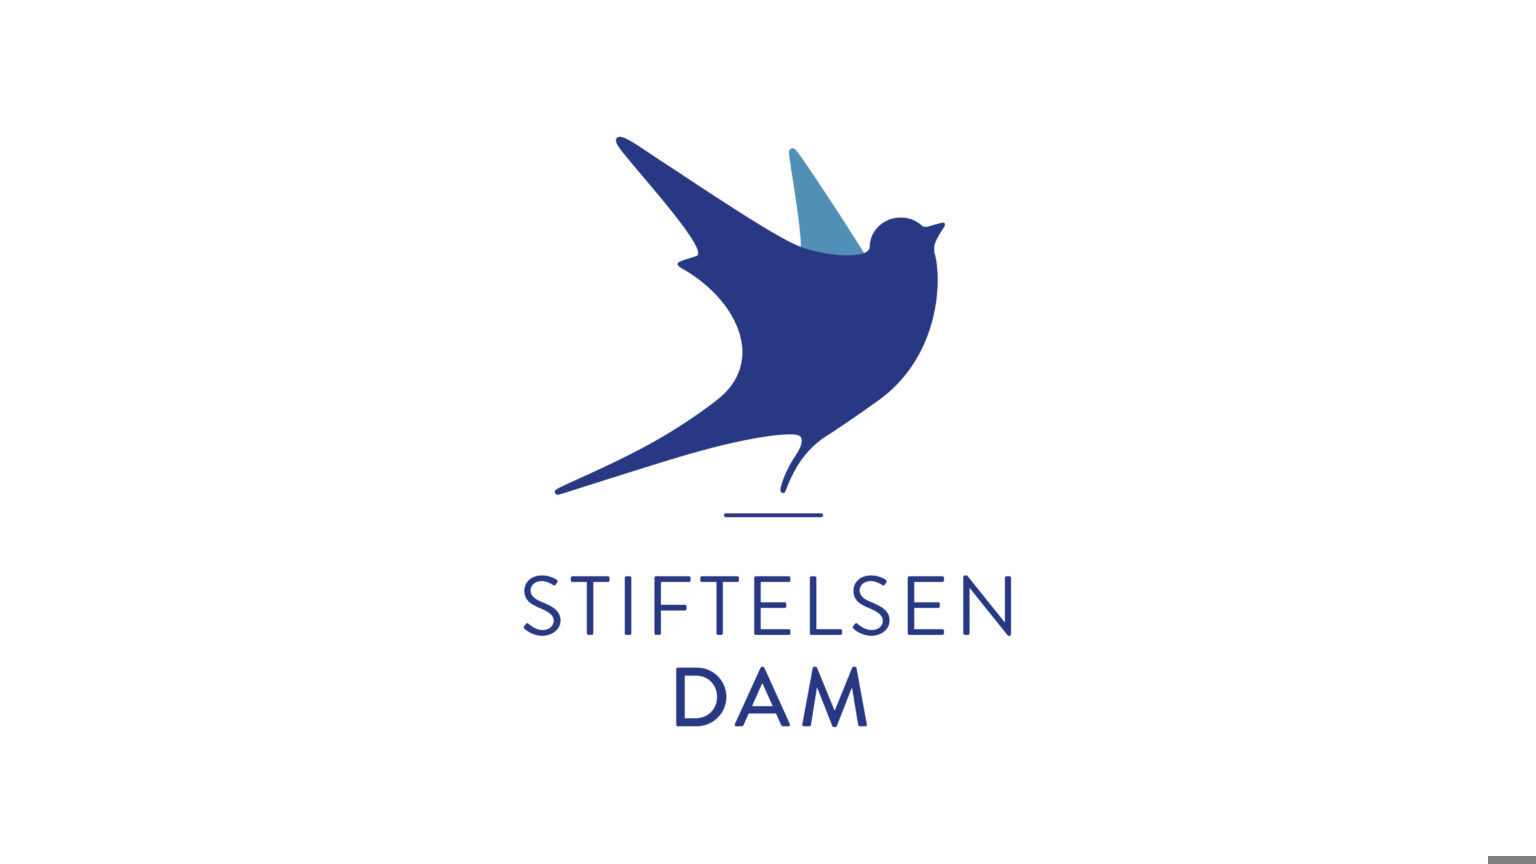 Stiftelsen-Dam-1536x864.jpg